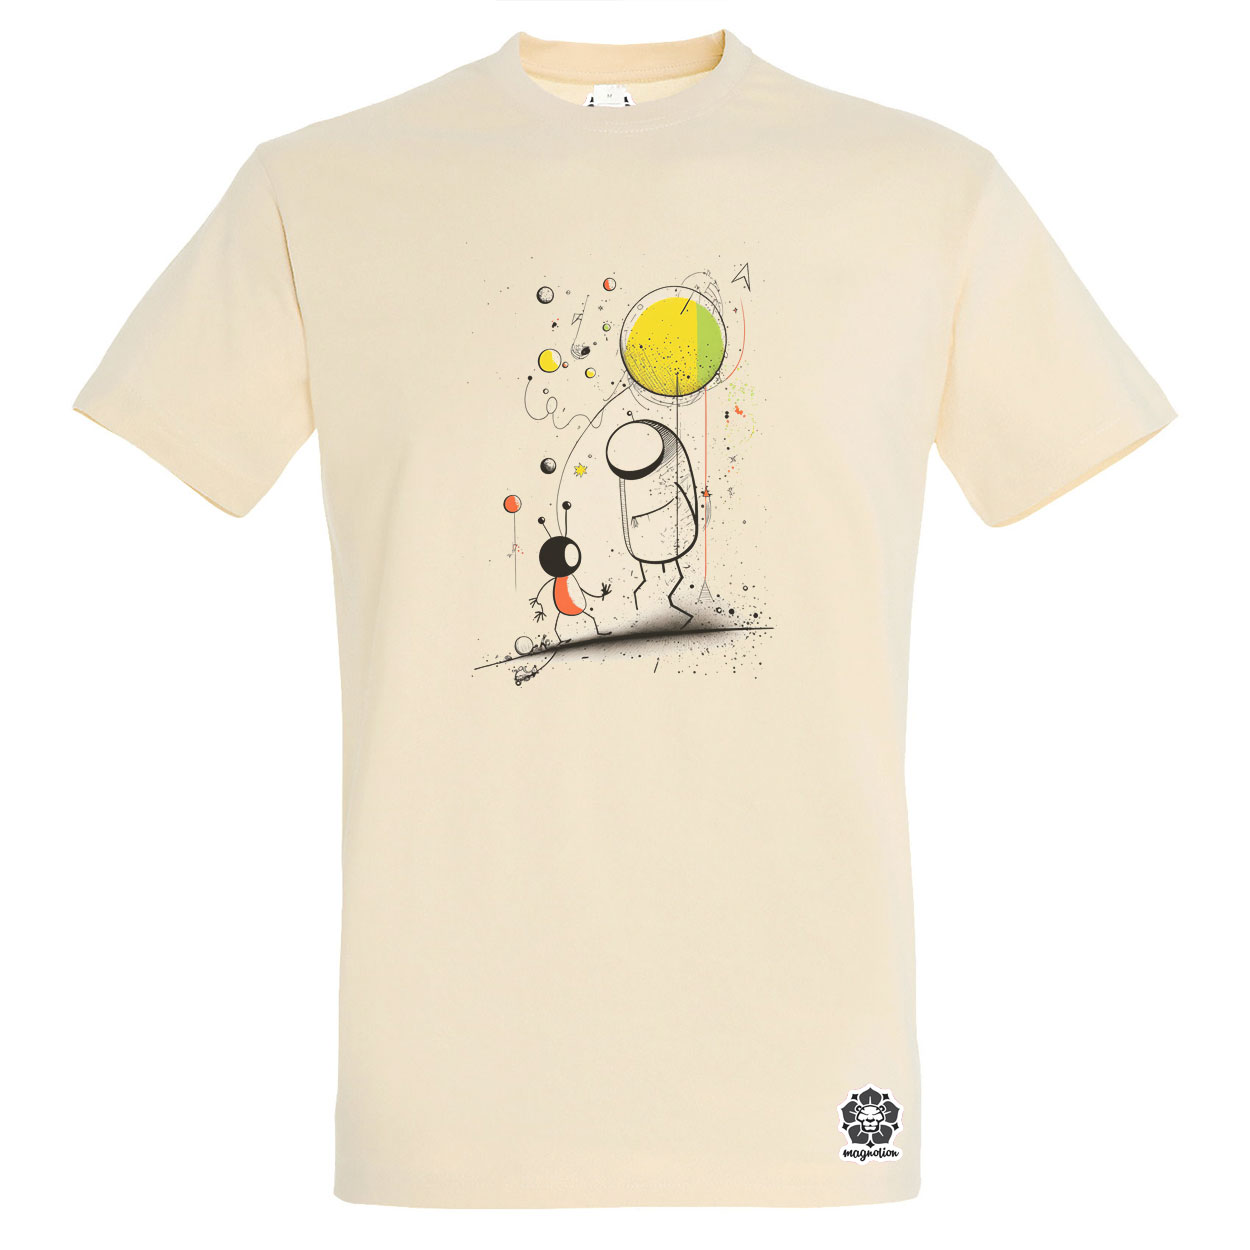 Joan Miró űr és asztronauta v1